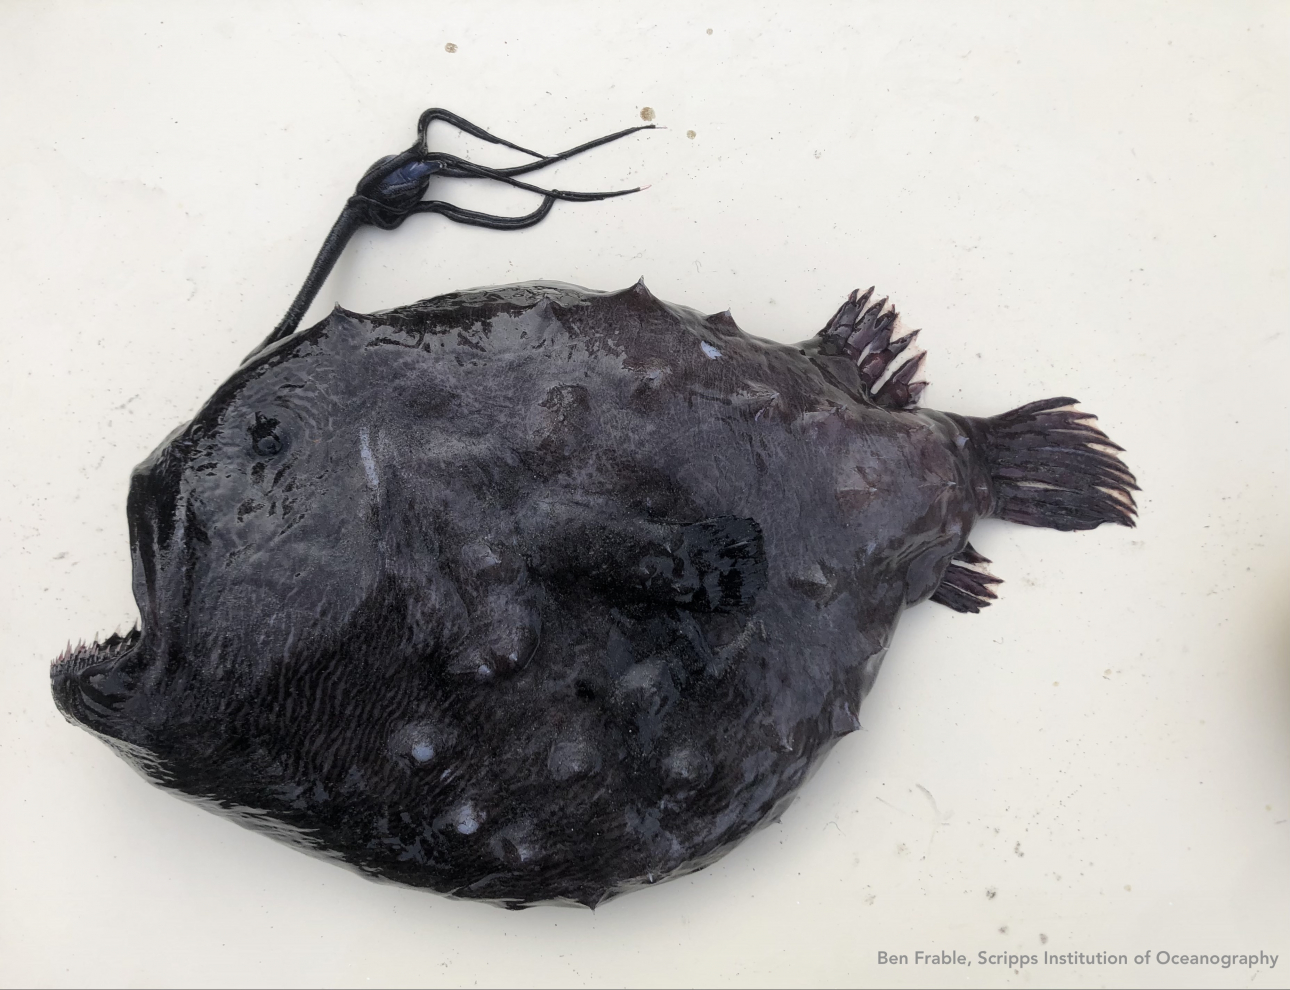 Mặc dù những hàng răng, gai nhọn và thịt đen tuyền trông như quái vật ngoài hành tinh, nhưng theo Tiến sĩ Frable thì đây vẫn là một “con cá xinh đẹp”. (Ảnh: Ben Frable/ Viện Hải dương học Scripps)